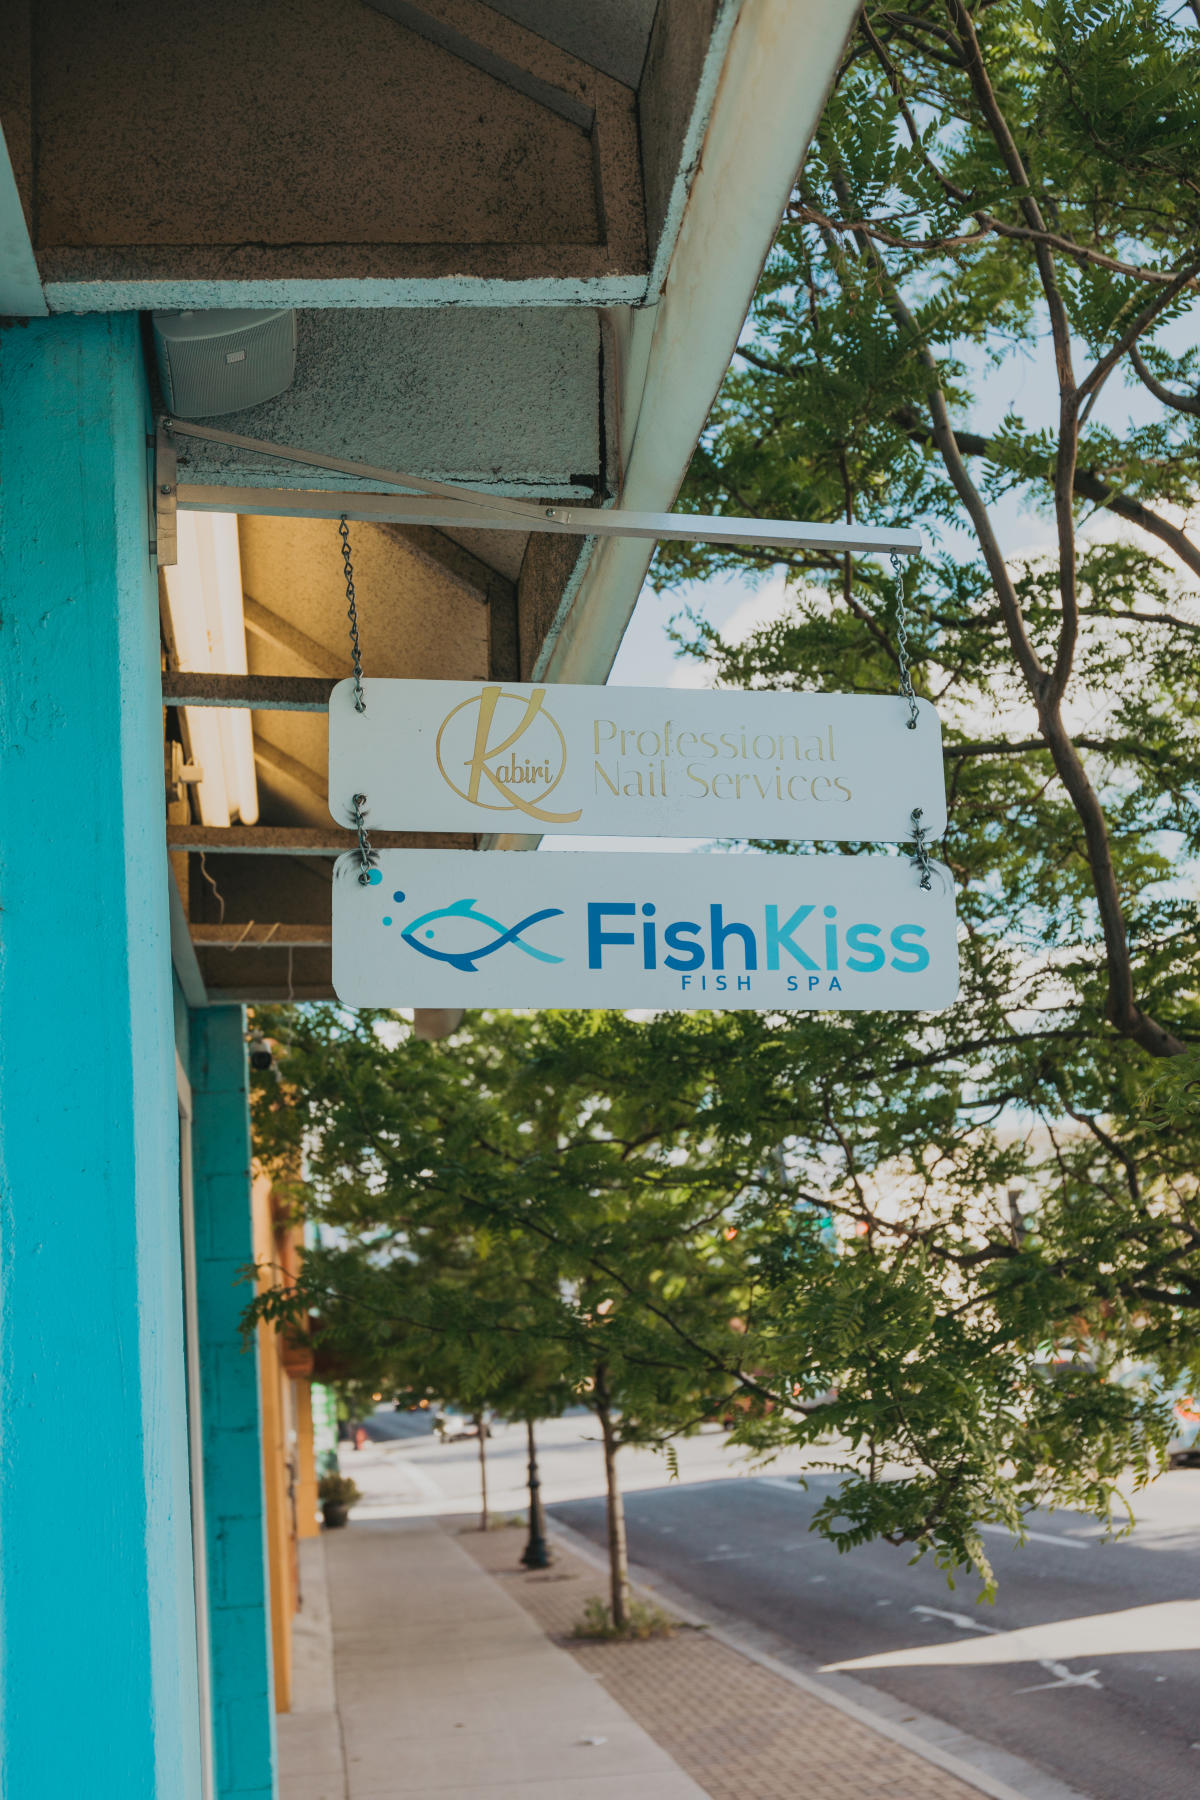 Best fish spas for fish pedicures in Colonia del Bosque Sur, Reynosa |  Fresha